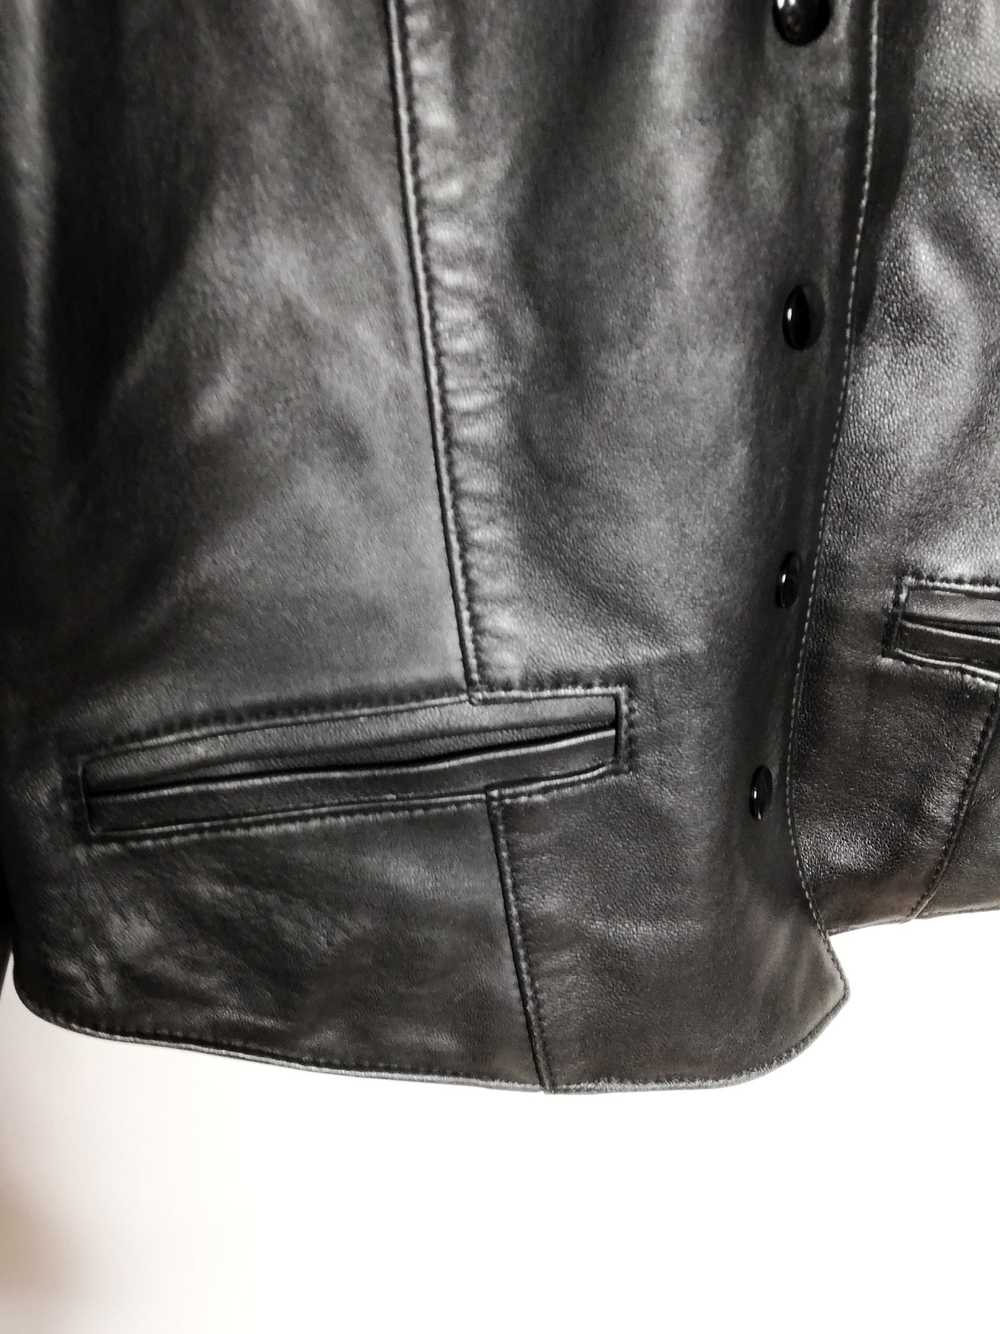 Veste en cuir - Veste noir en cuir, coupe courte,… - image 3